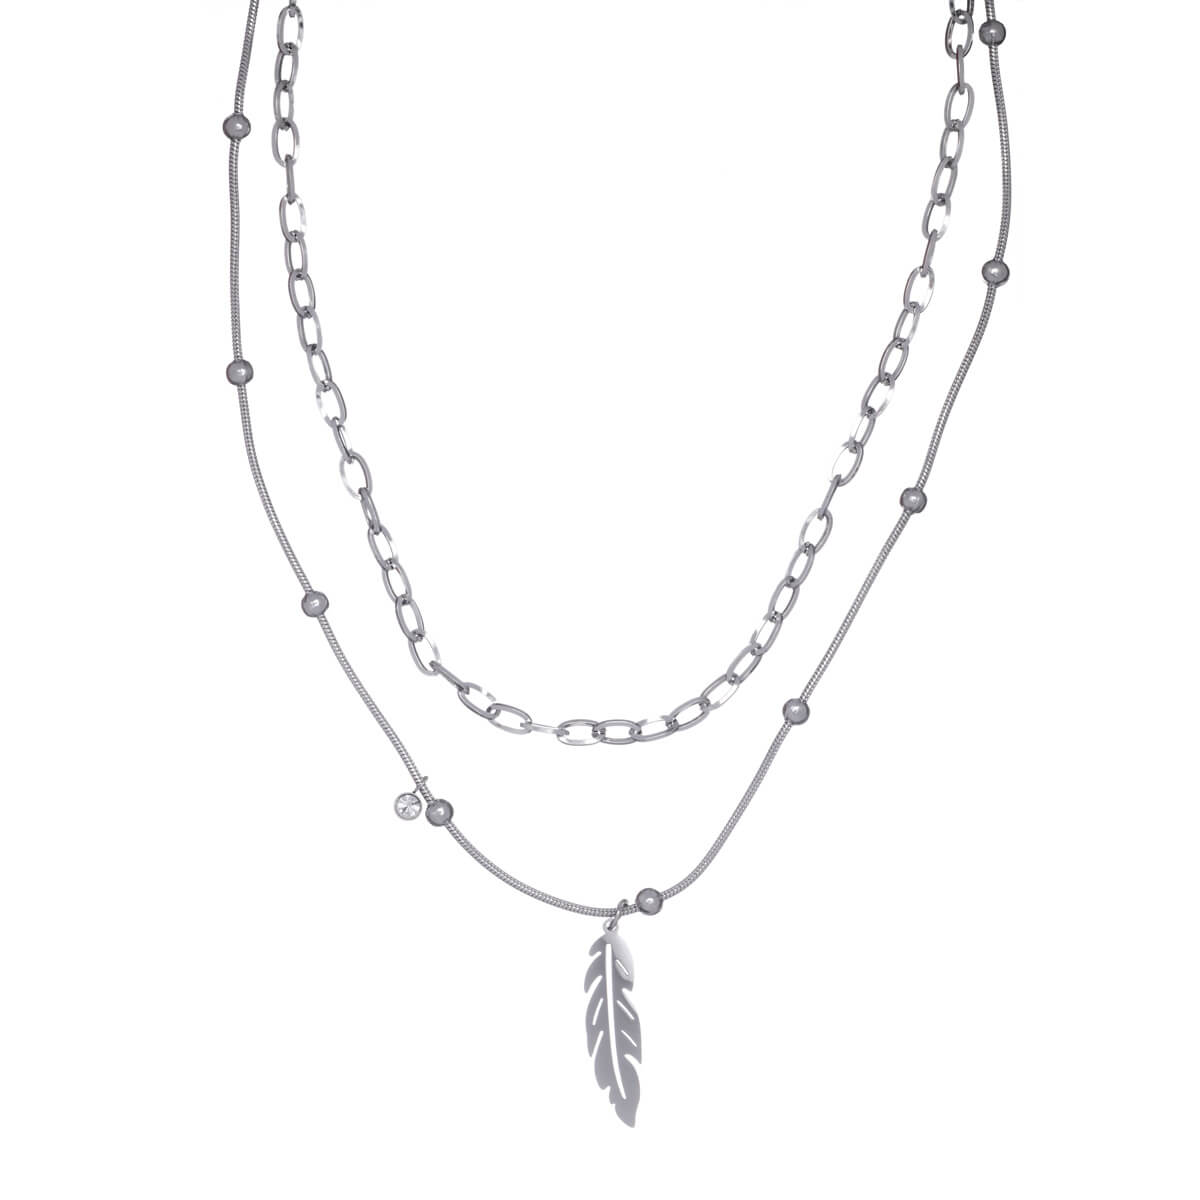 Two chains feather pendant pendant necklace 40cm & 46cm (steel 316L)